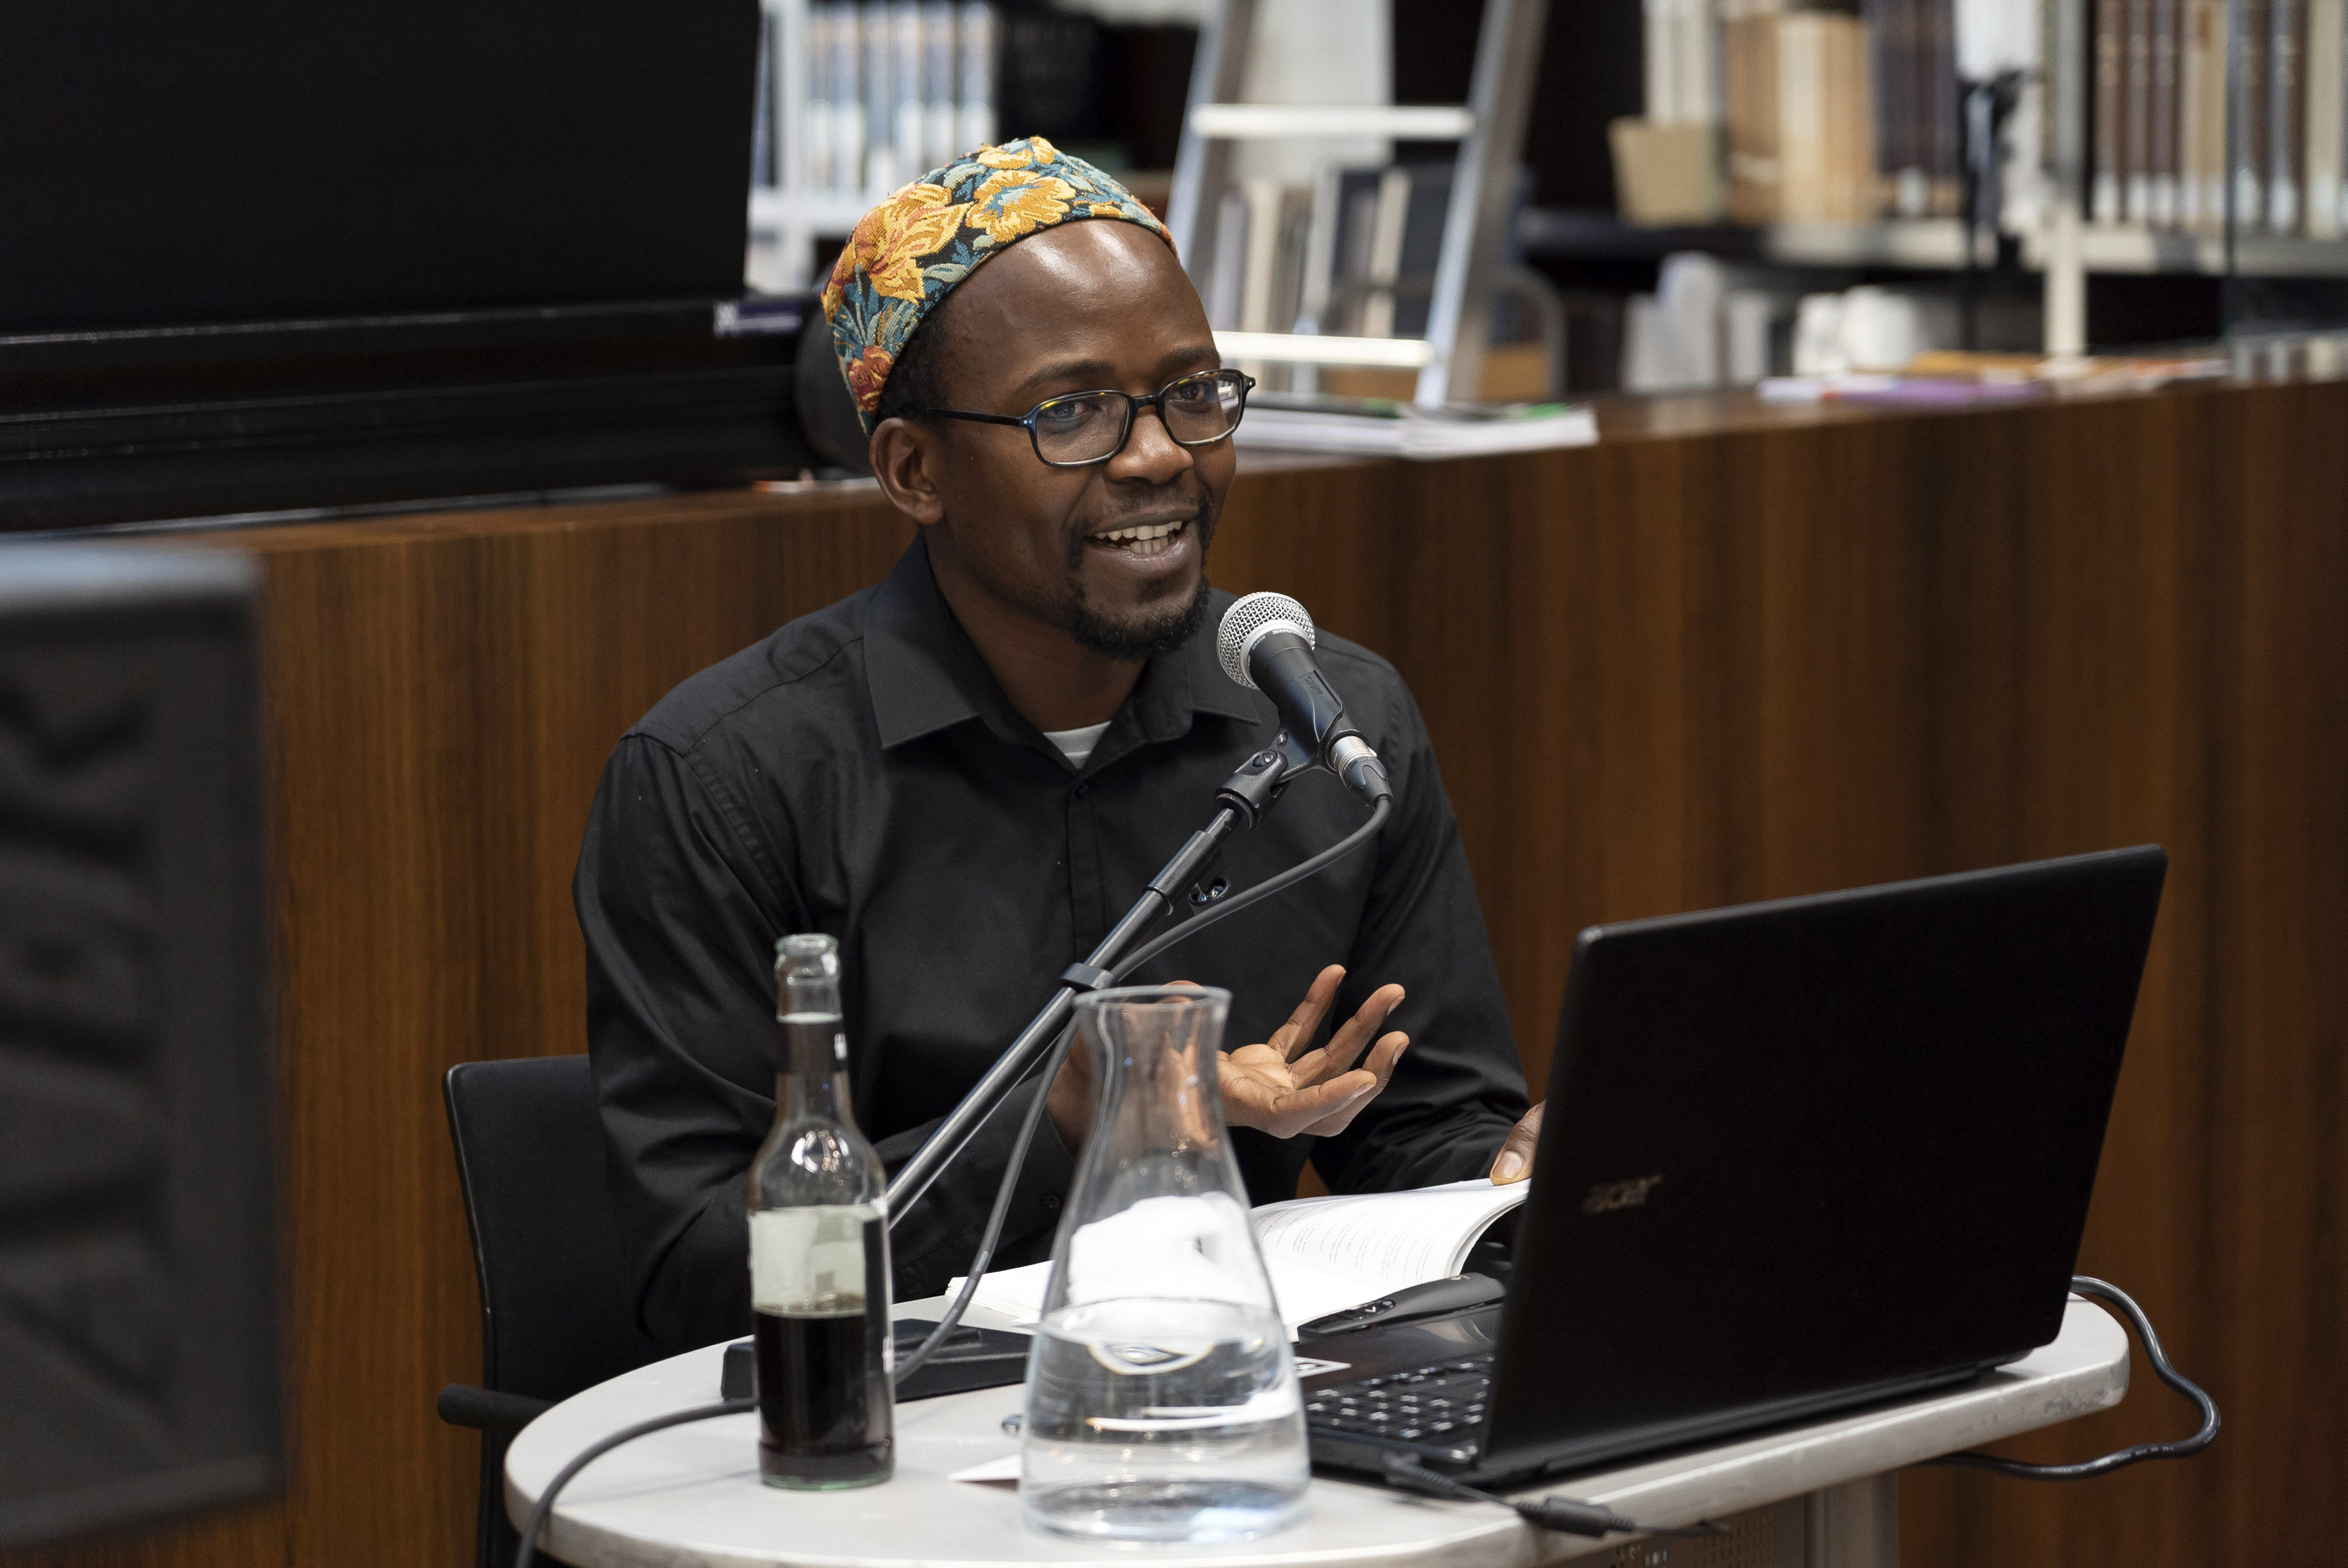 Schwerin: Online-Vortrag zu Errungenschaften Afrikas